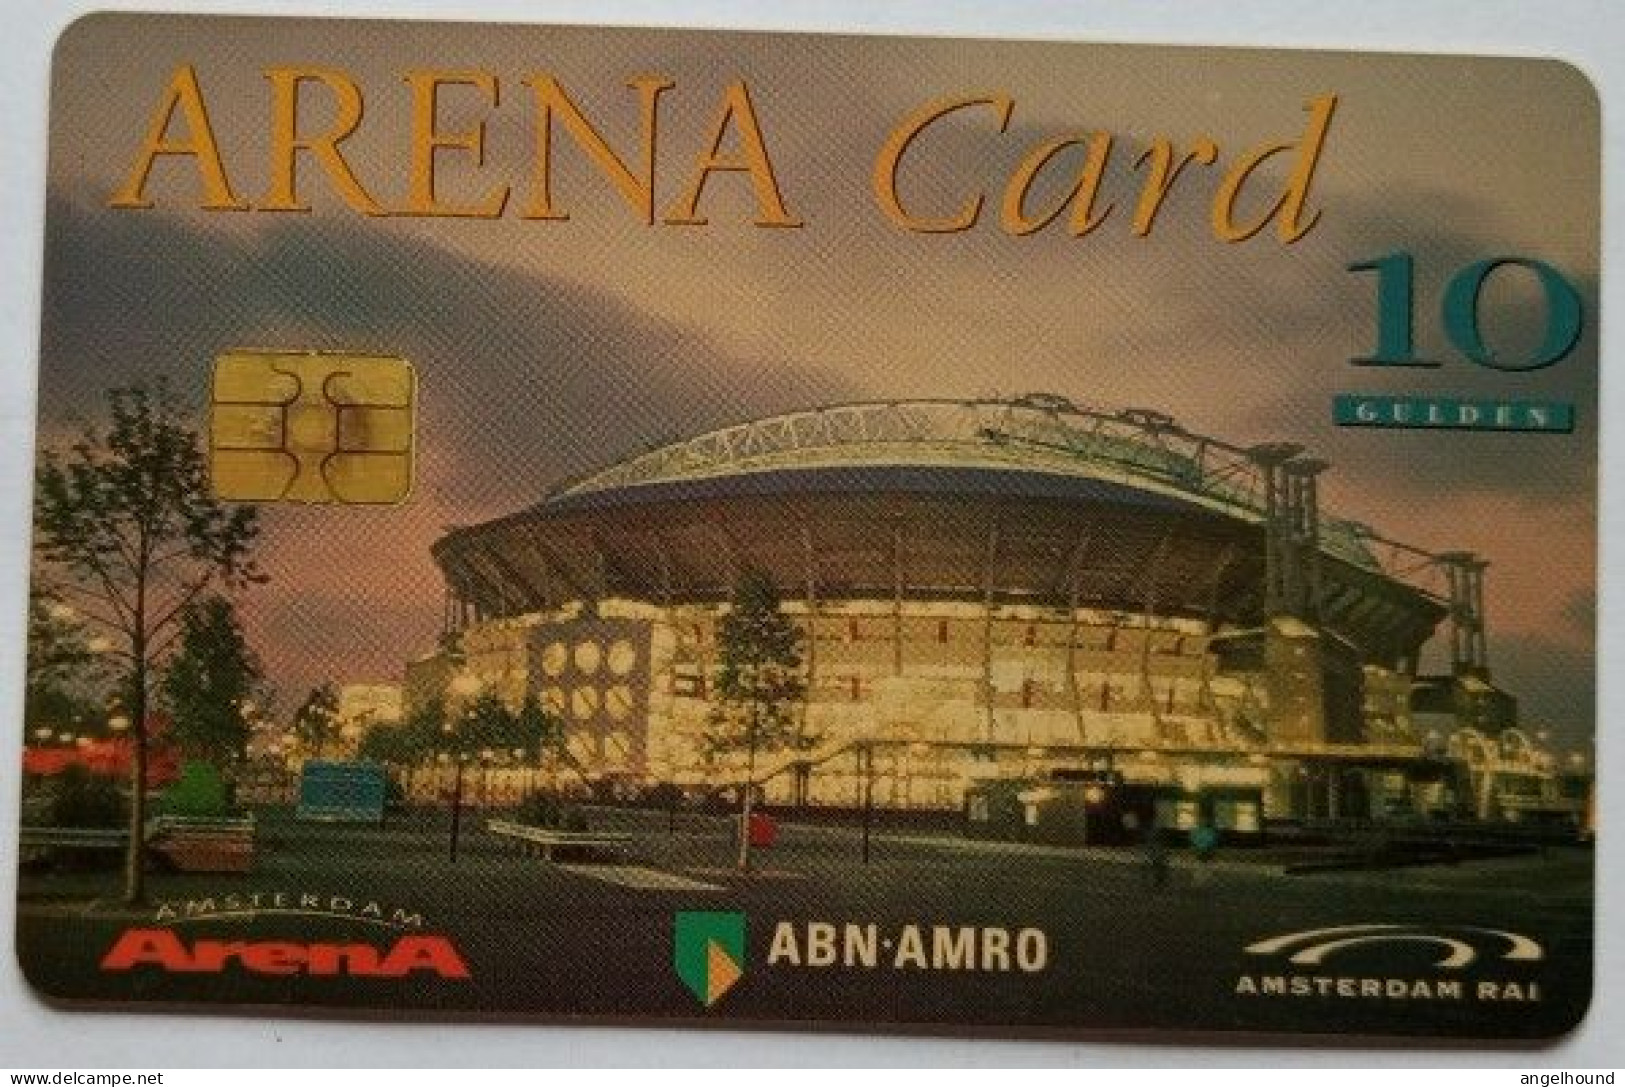 Netherlands 10 Guilden - Arena Card ABN Amro - Privé